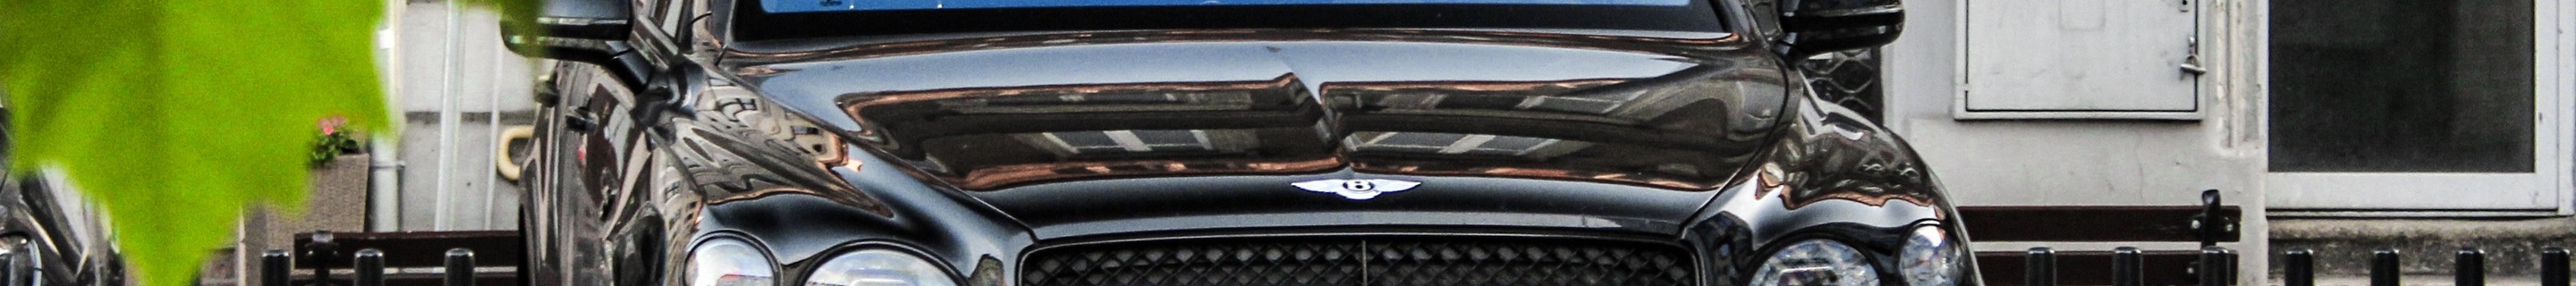 Bentley Bentayga Azure